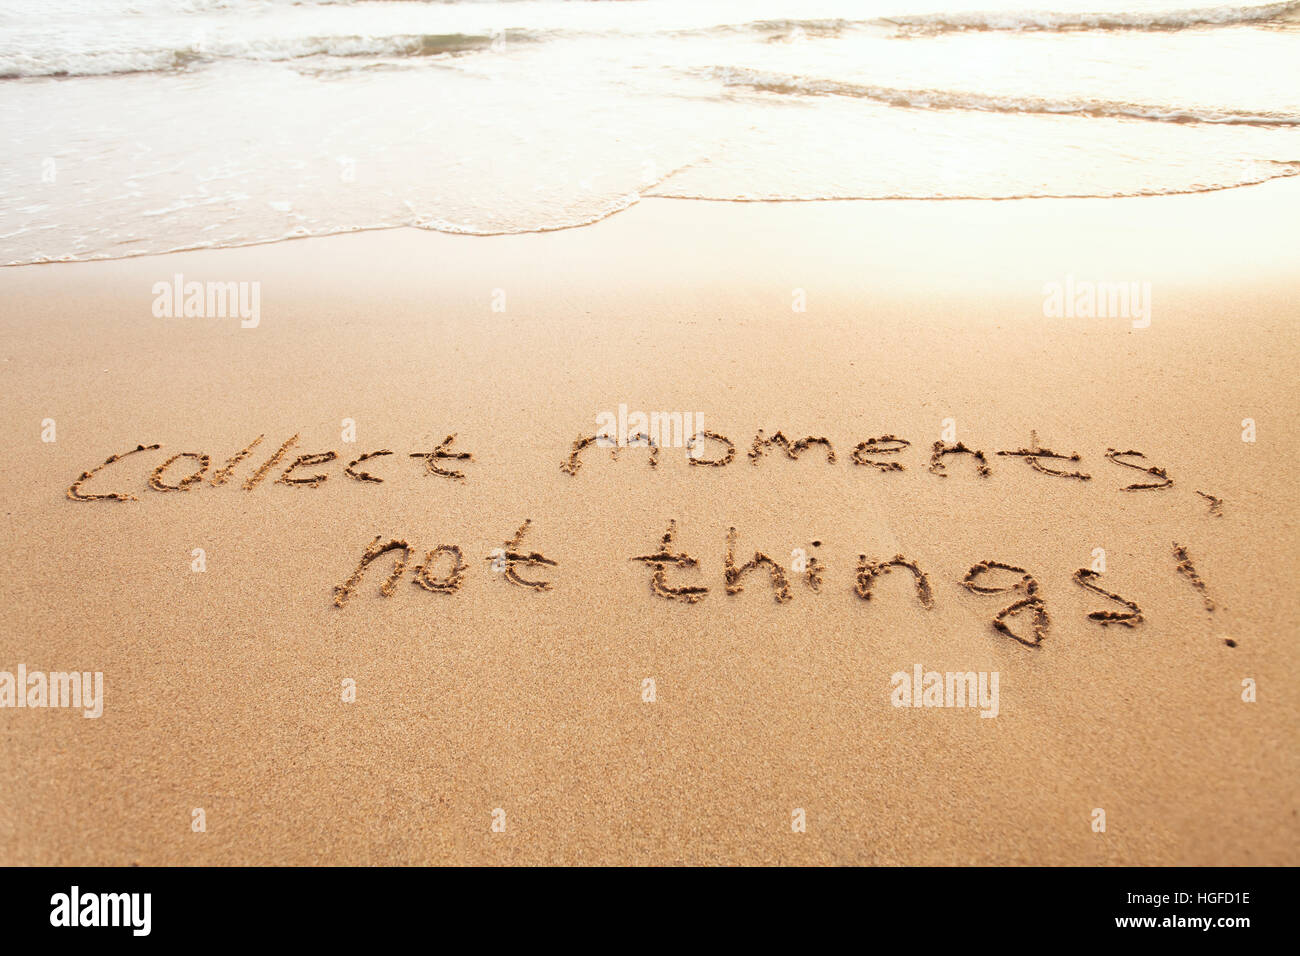 sammeln Sie Momente, nicht Dinge - Glück Konzept glücklich Lebensstil inspirierend Zitat, genießen Sie das Leben, Text auf sand Stockfoto